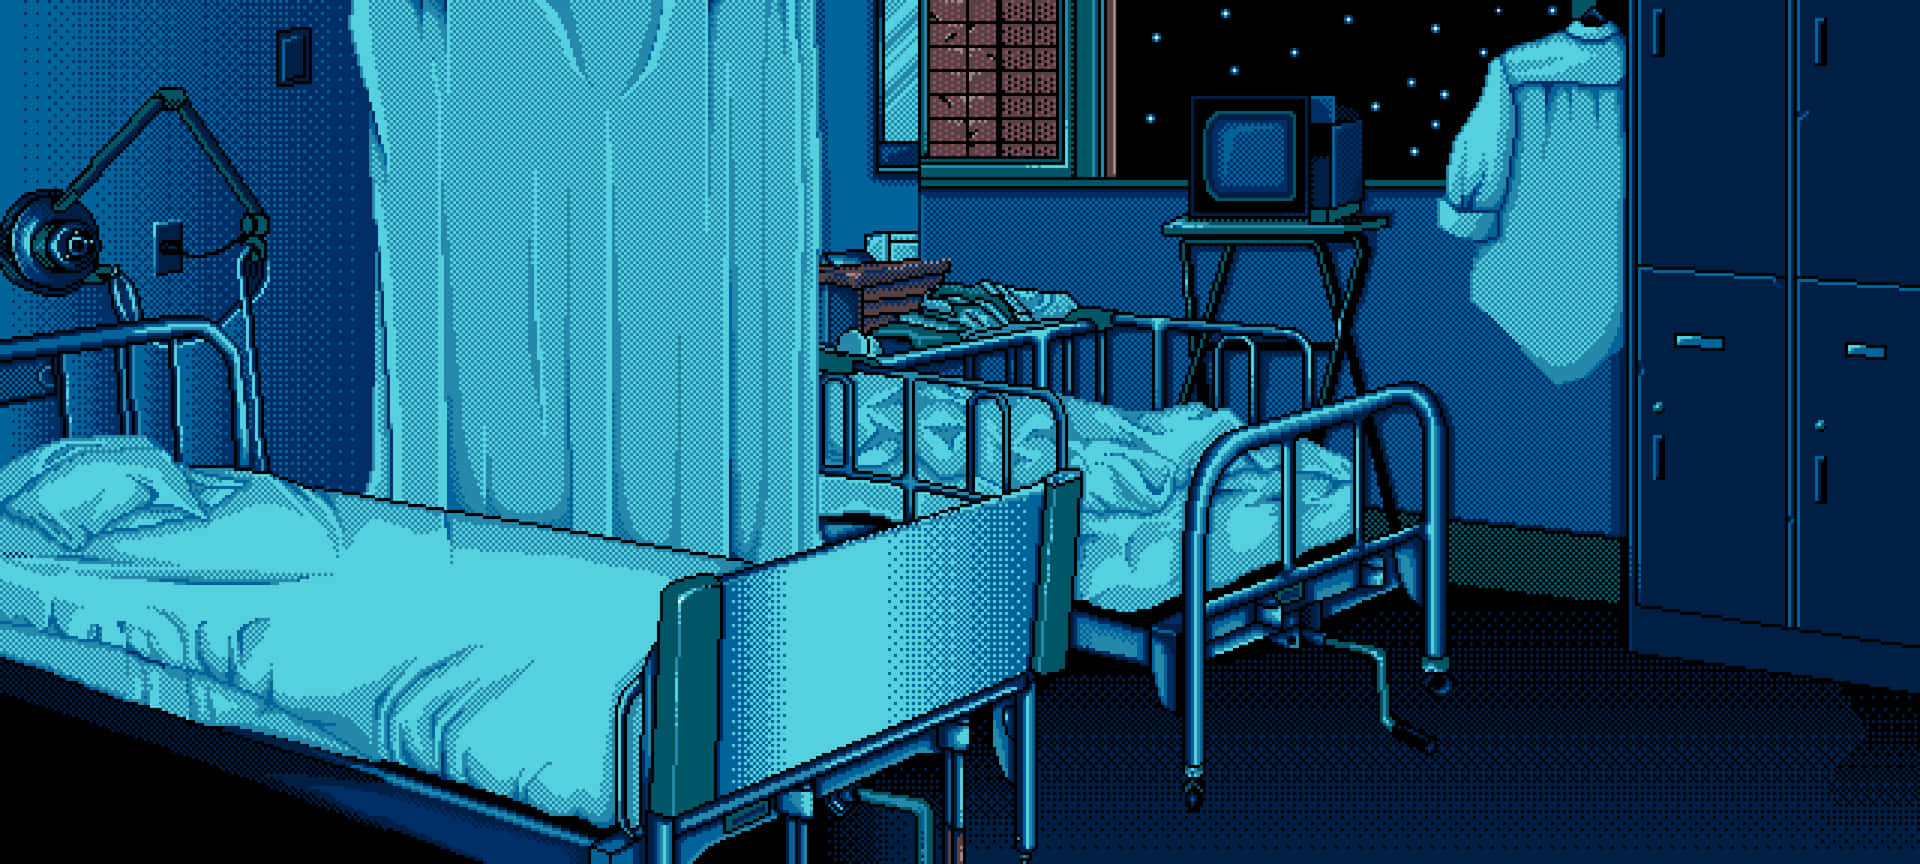 Camade Hospital Con Estilo Pixelado Retro Y Cielo Nocturno. Fondo de pantalla